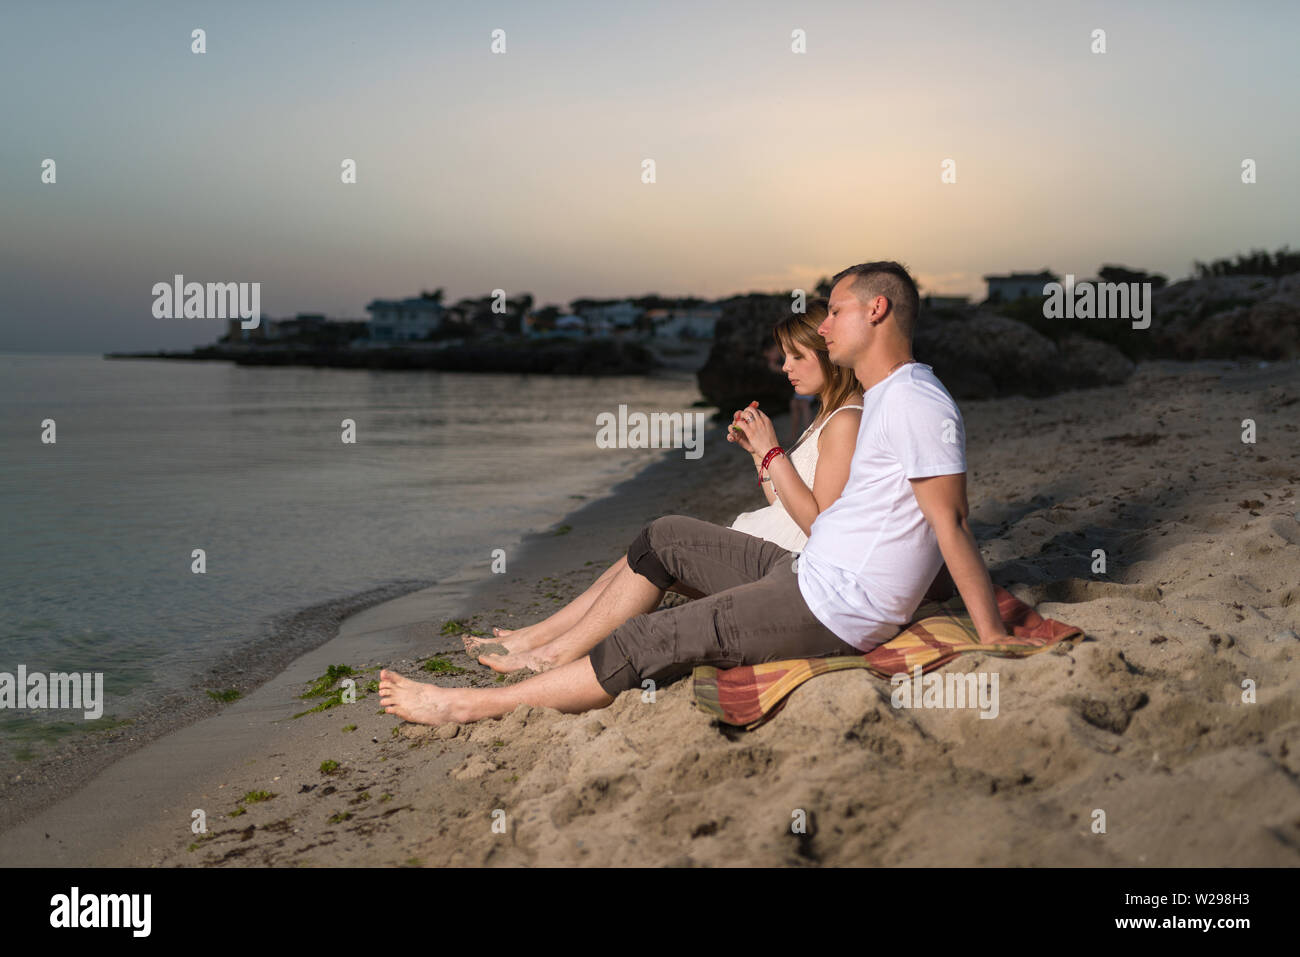 Junge romantische Paar entspannen am Strand zu sitzen und die gemeinsame  Nutzung von Wassermelone am Abend Stockfotografie - Alamy